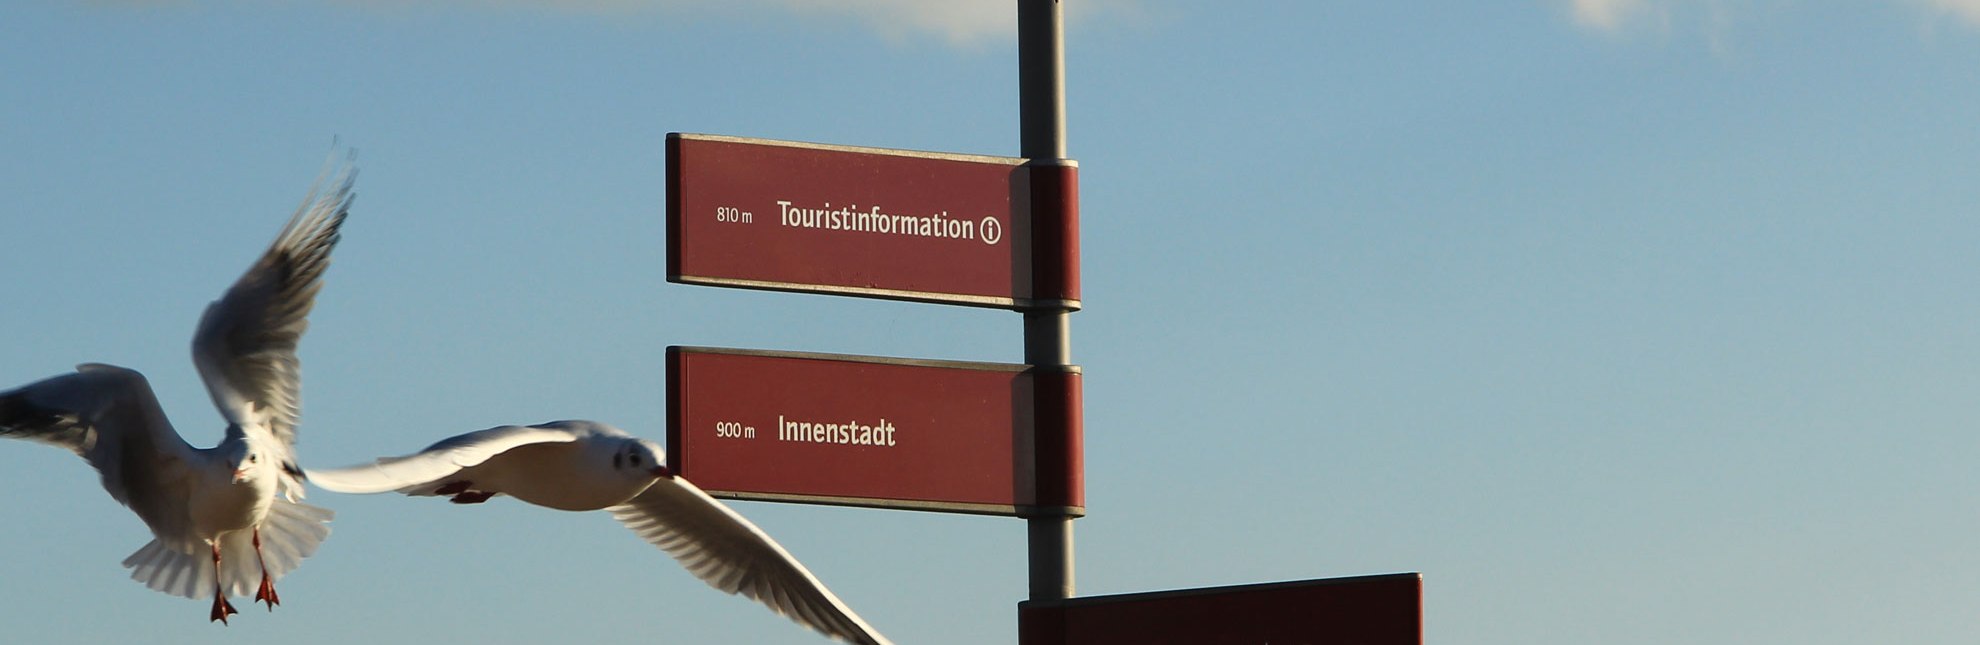 Hinweis zur Tourist-Information Geesthacht: Zimmervermittlung, Kartenmaterial, Urlaubstipps, © Tourist-Information Geesthacht